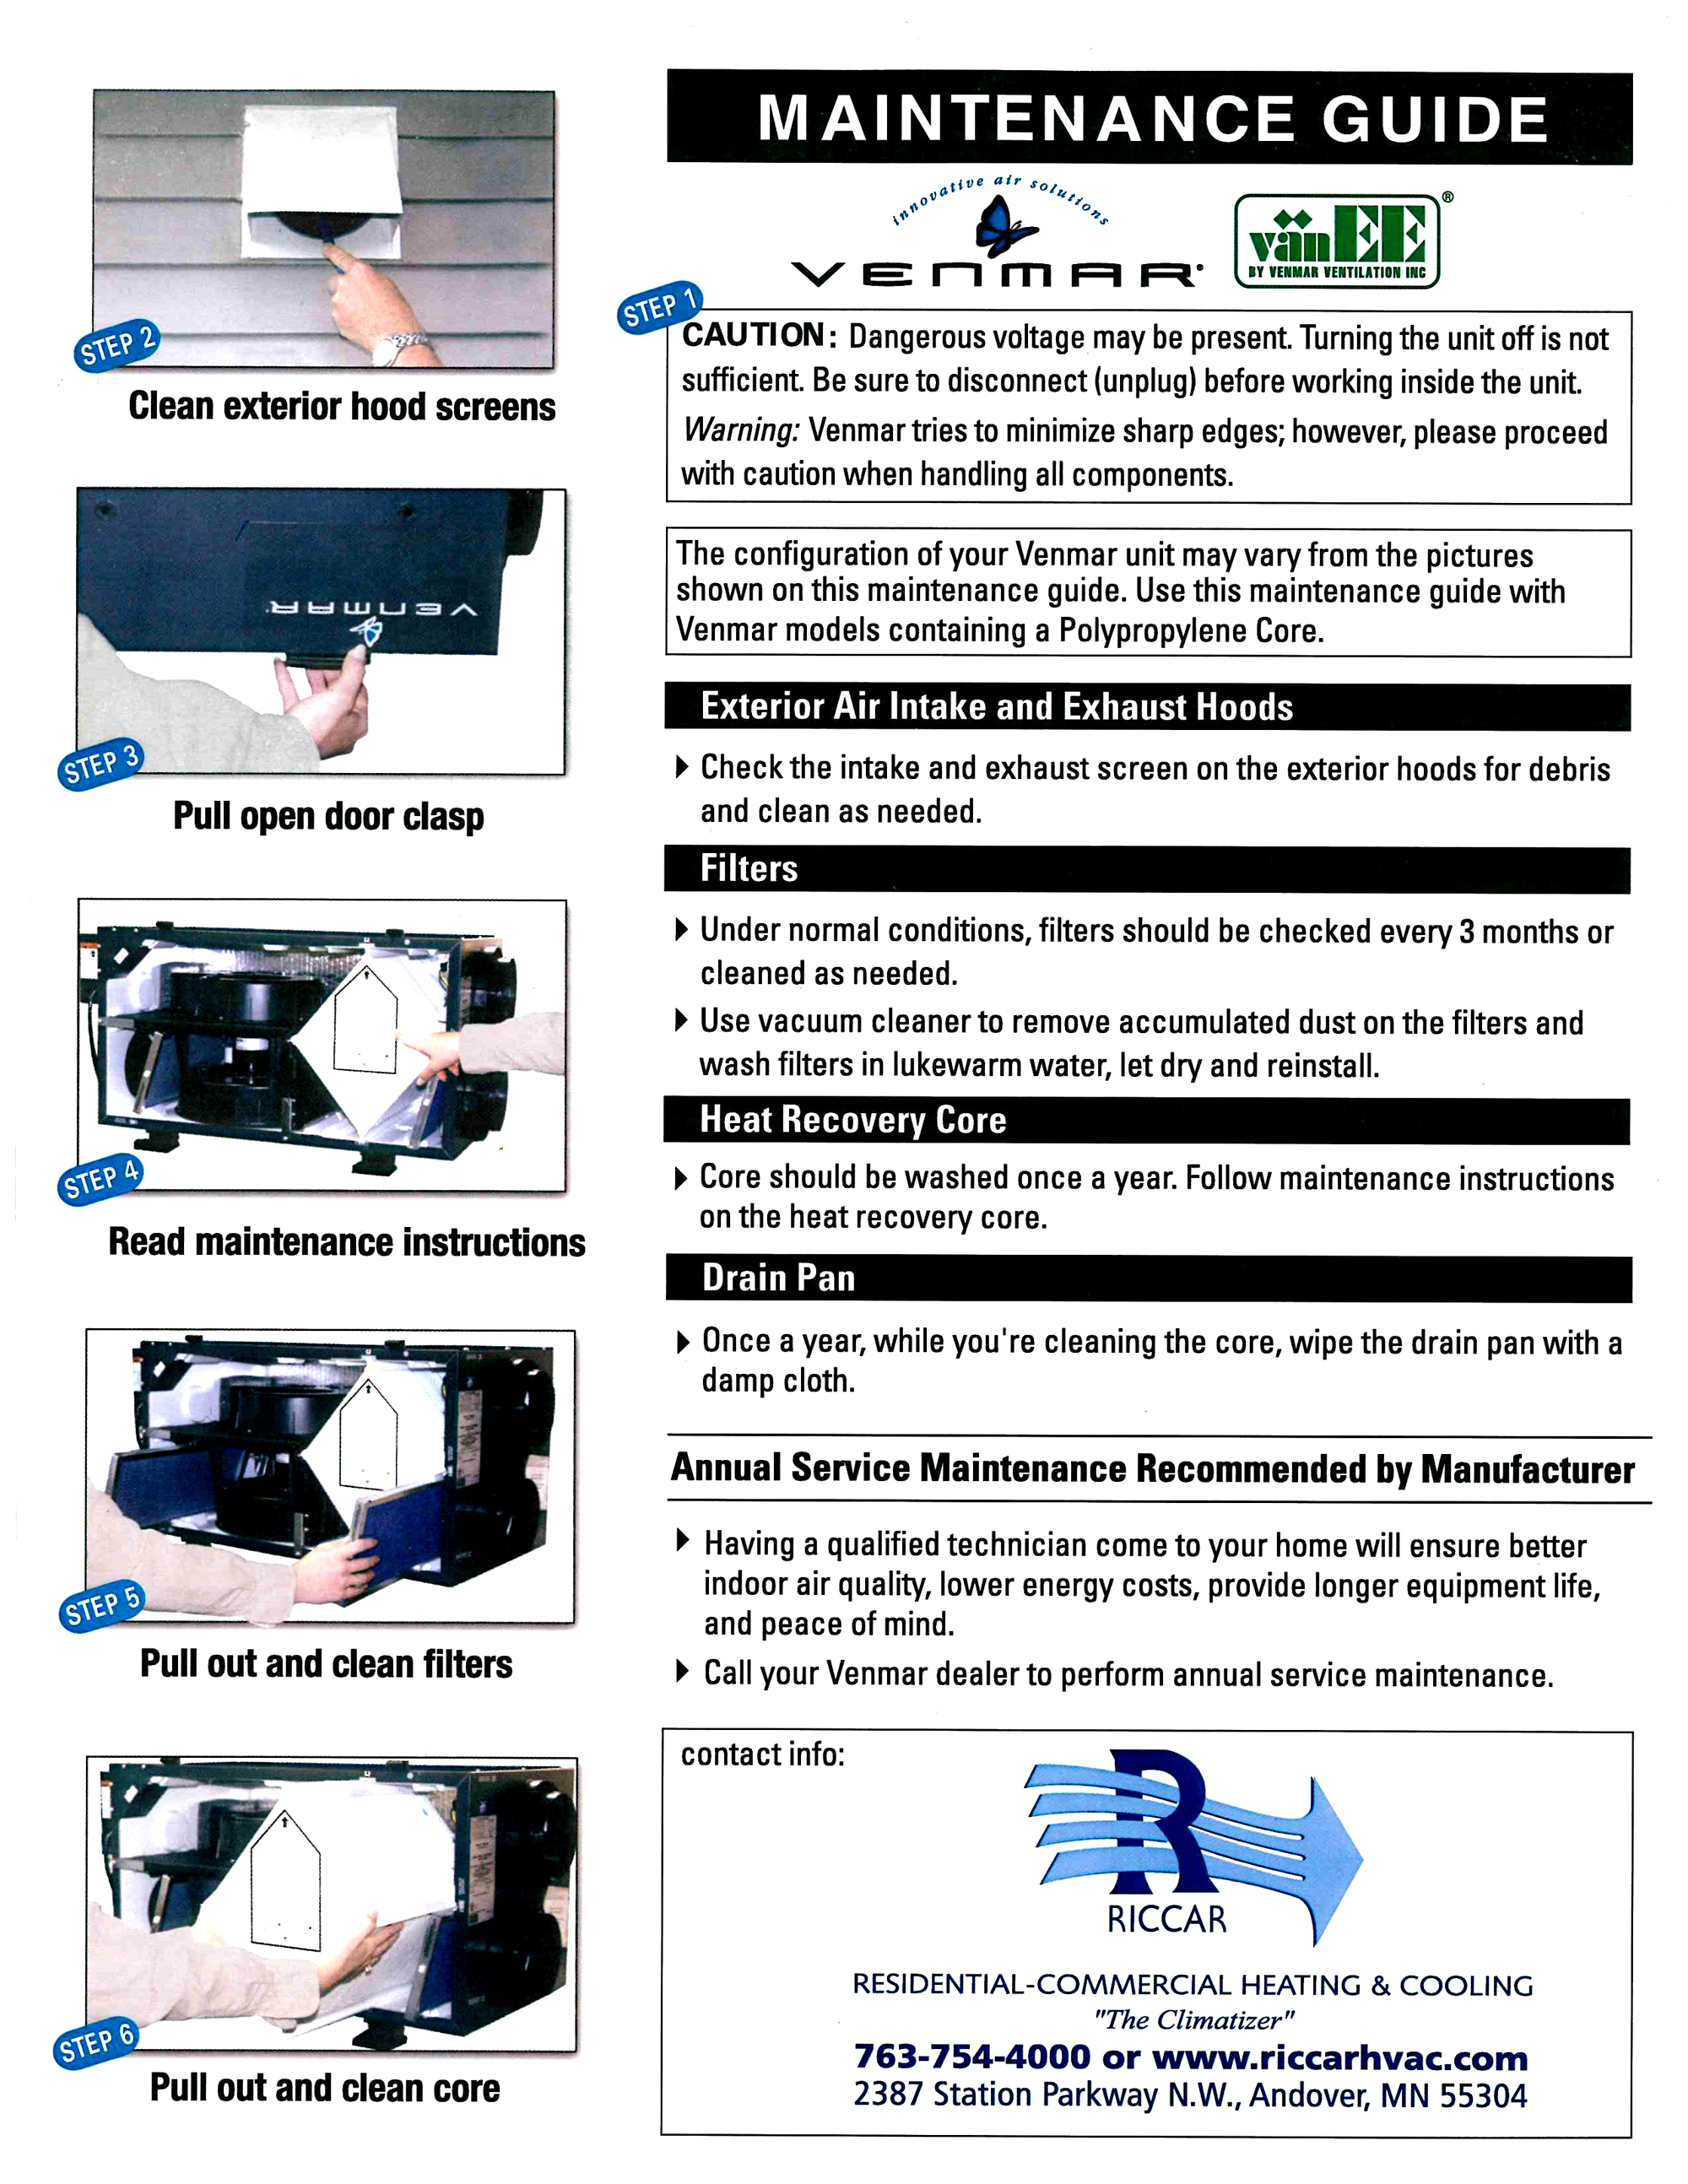 HRV Maintenance Guide